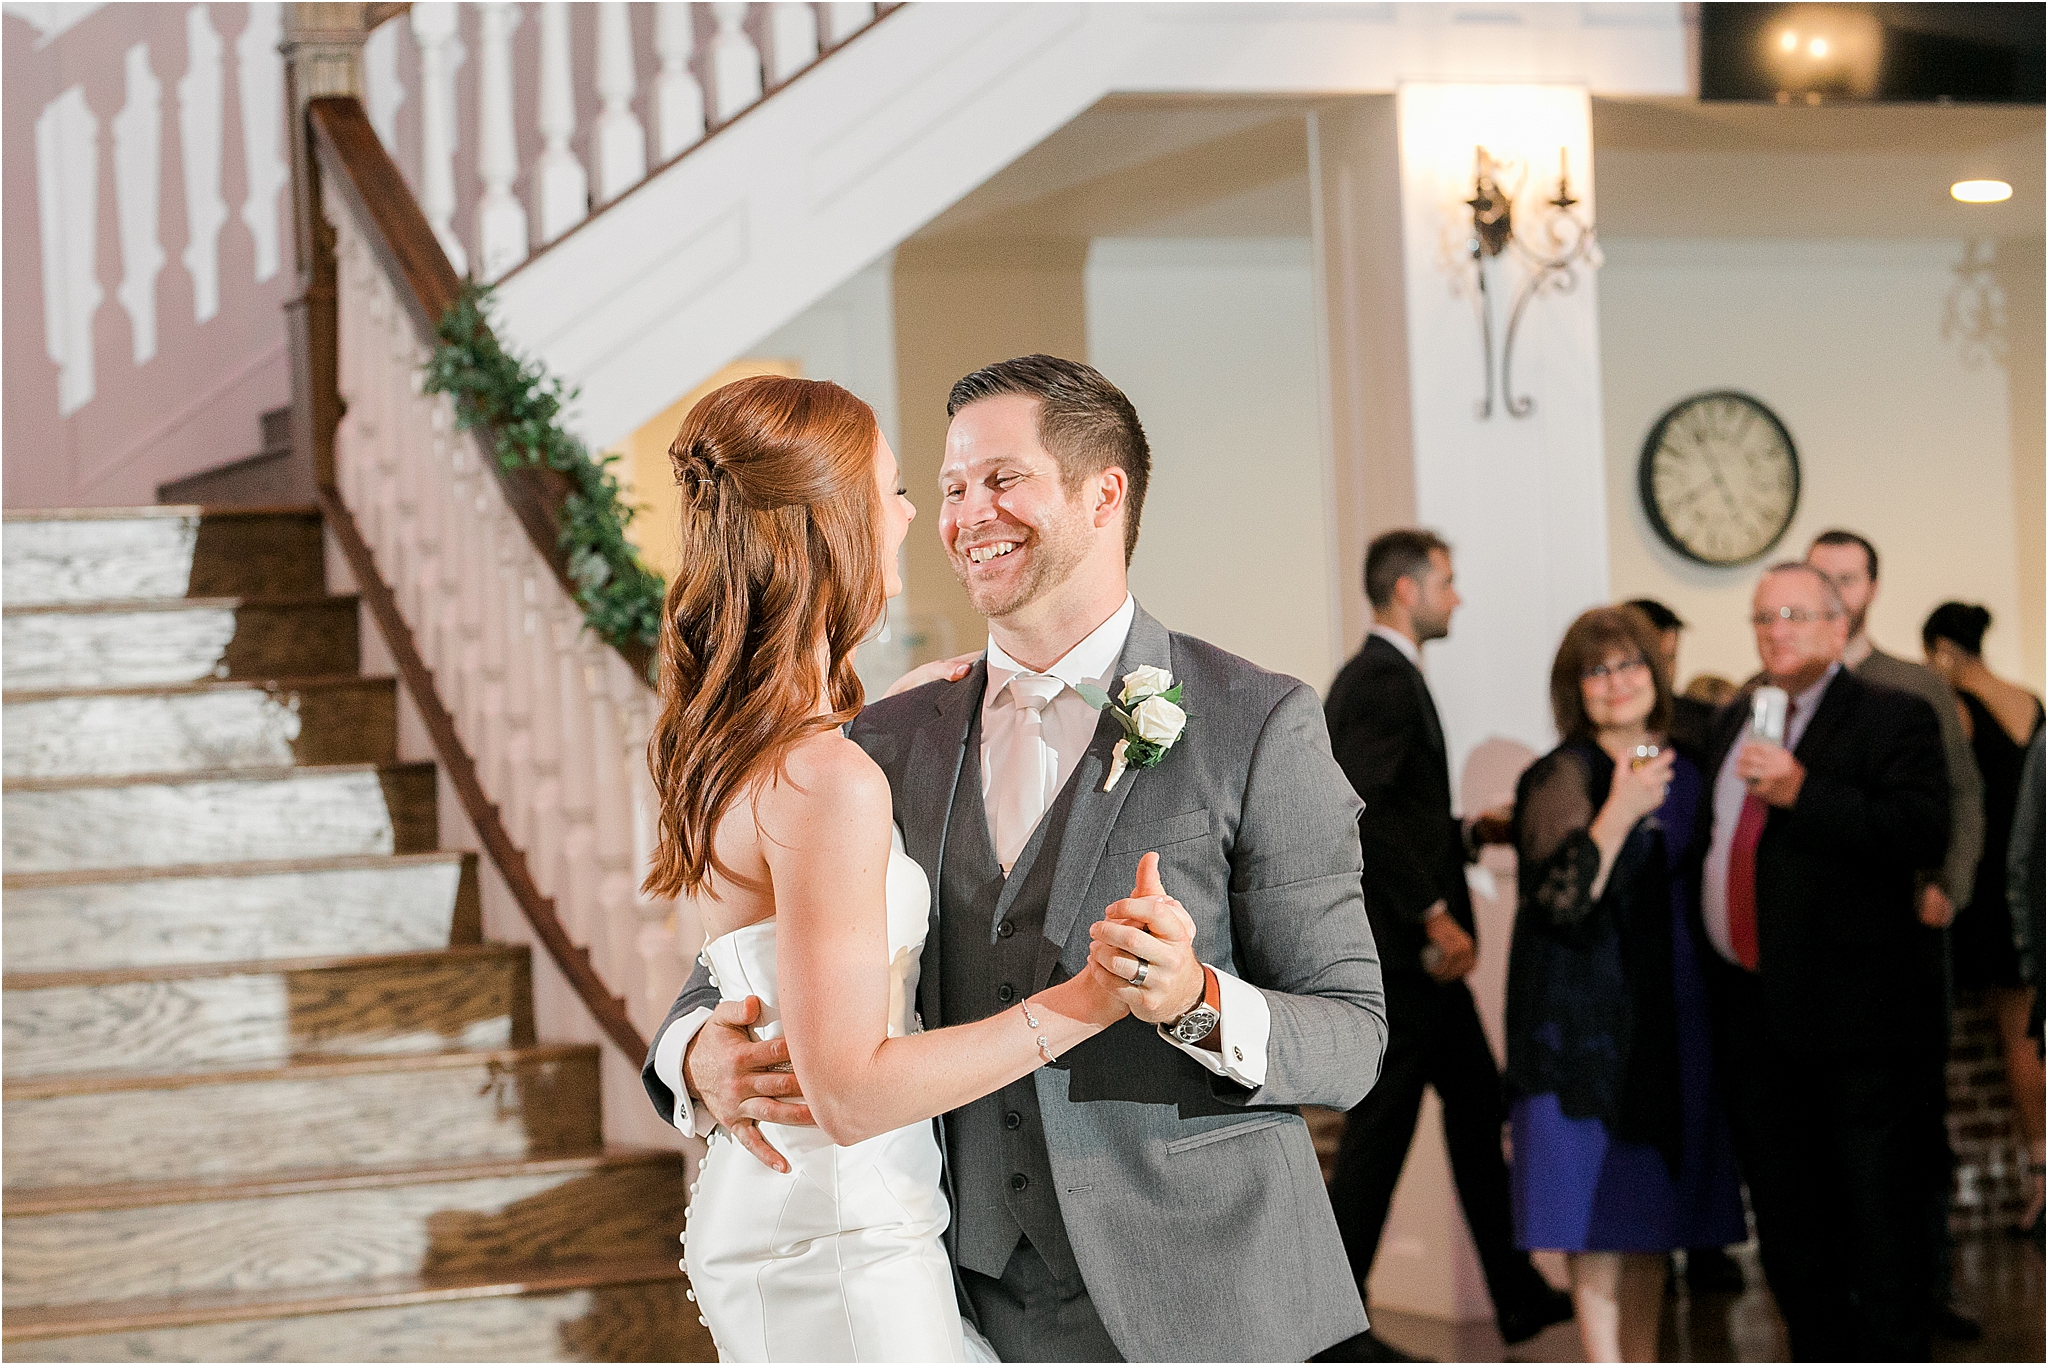 Dallas Wedding Reception at Rockwall Manor by DFW Wedding Photographer Jillian Hogan 